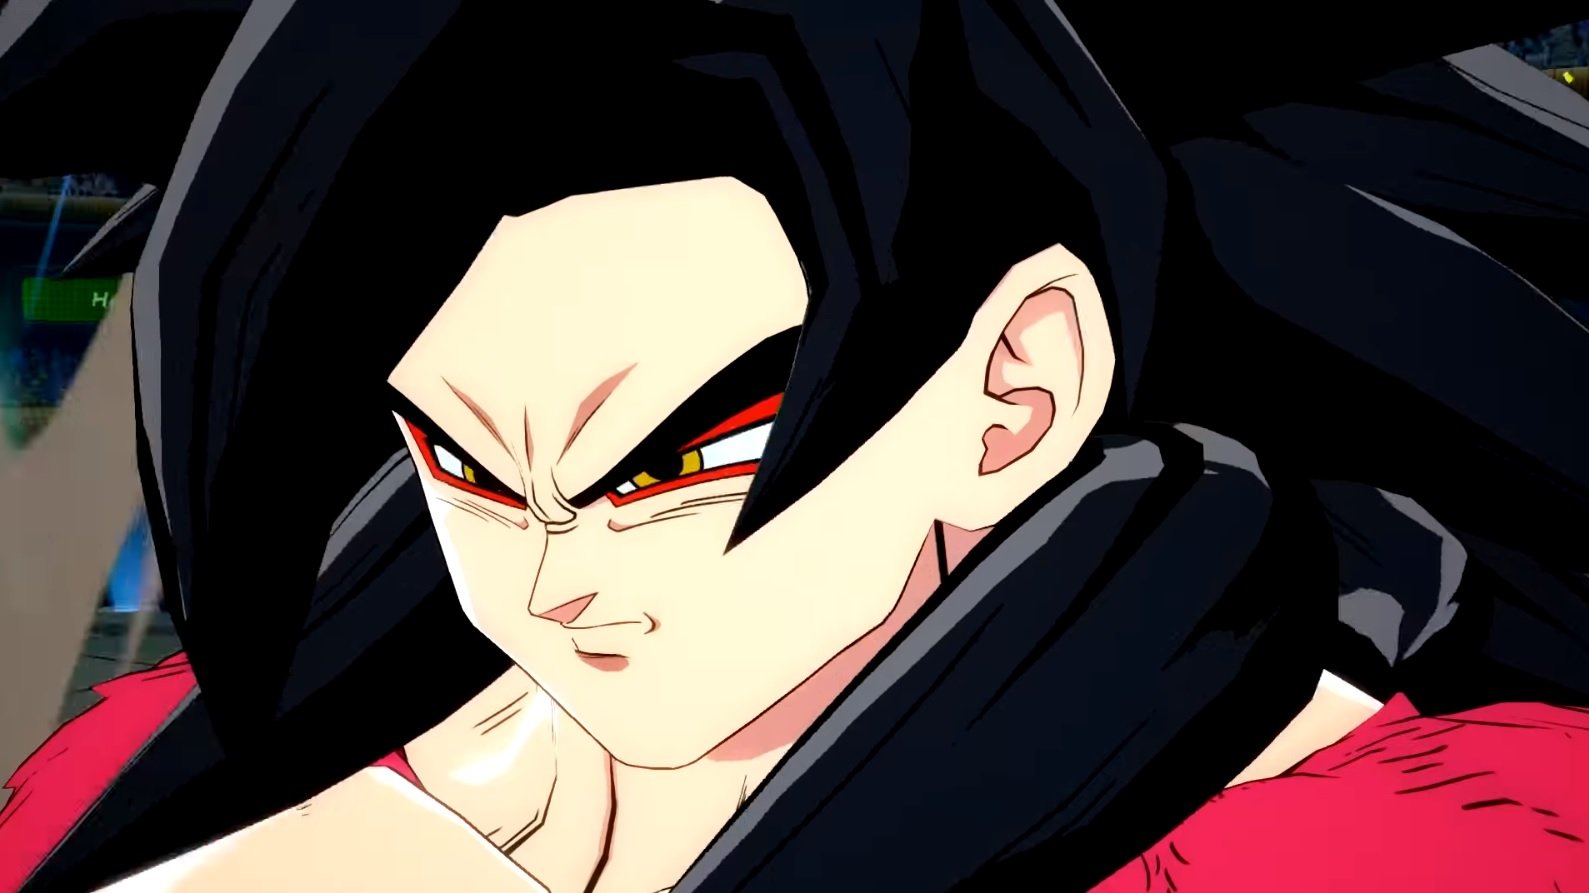 Trailer de Dragon Ball FighterZ mostra Goku criança se transformando em Super Sayajin 4